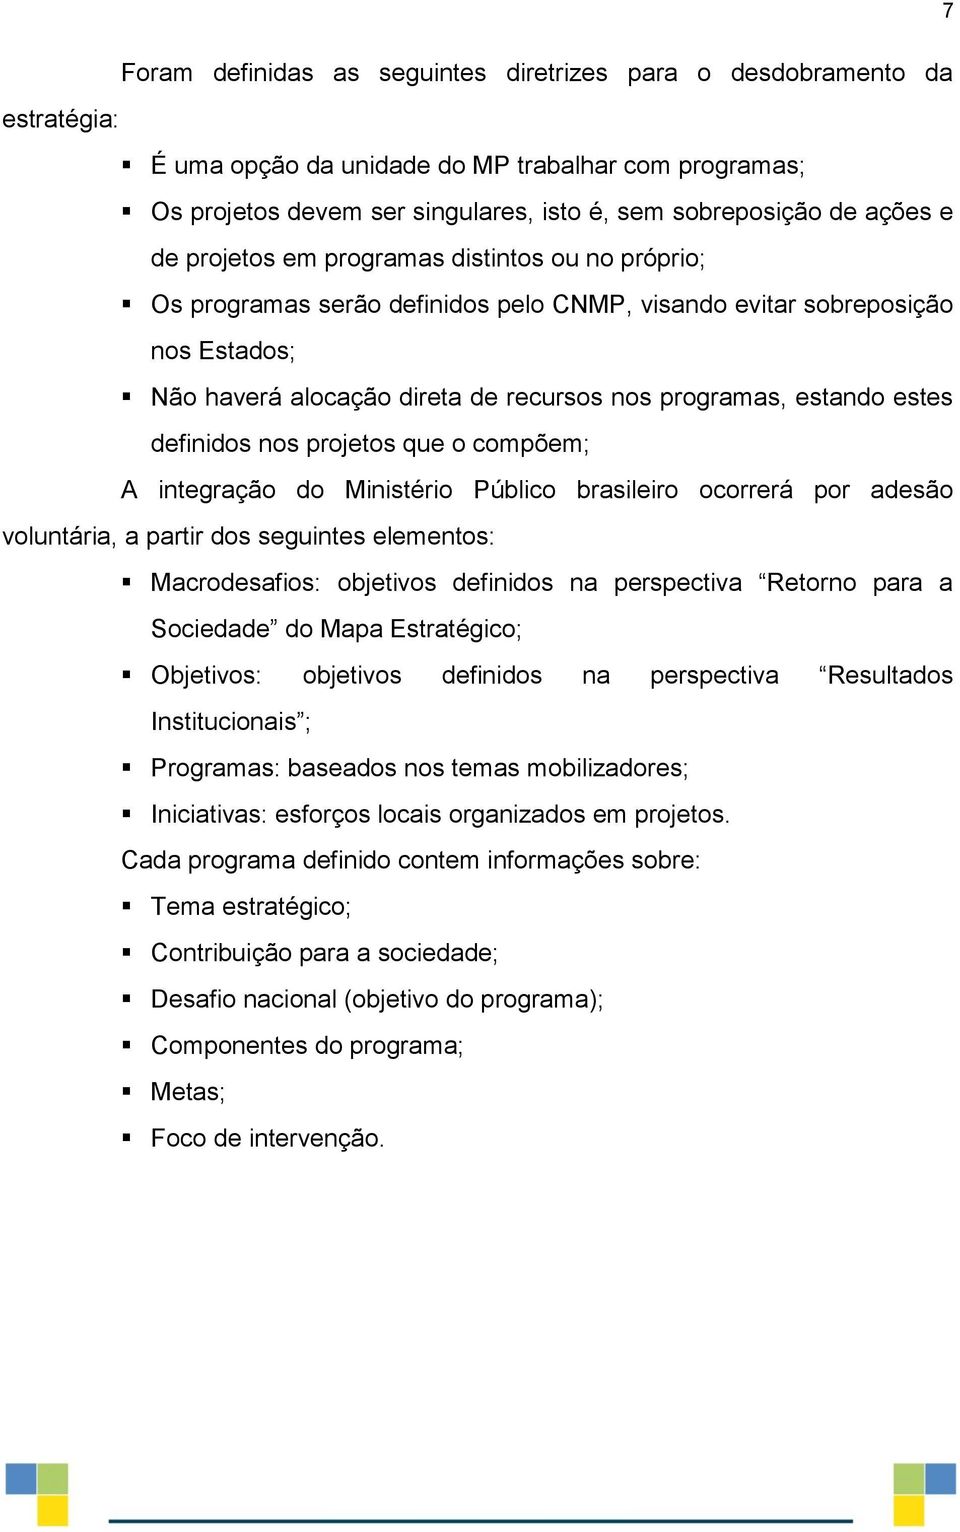 estes definidos nos projetos que o compõem; A integração do Ministério Público brasileiro ocorrerá por adesão voluntária, a partir dos seguintes elementos: Macrodesafios: objetivos definidos na